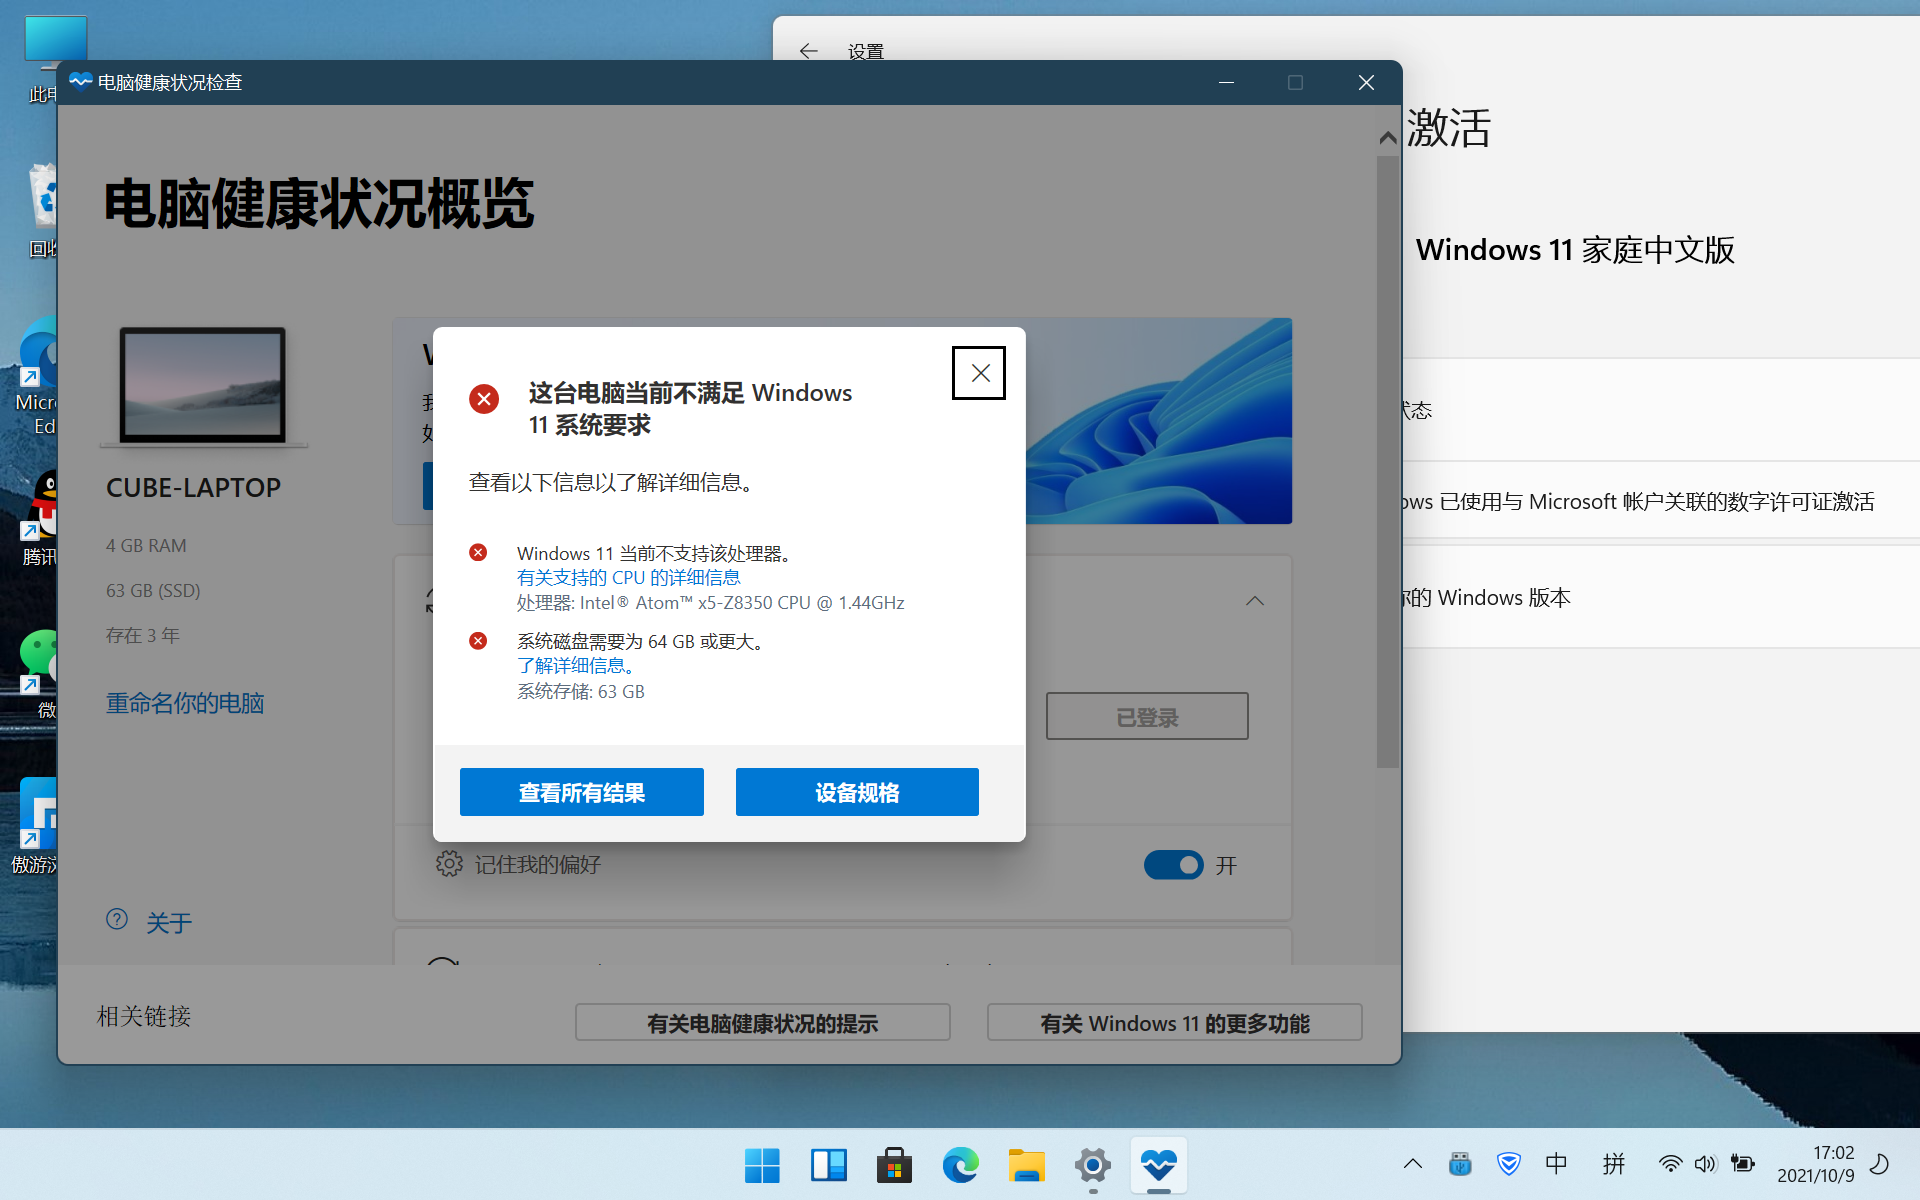 酷比魔方iWork10Pro从Windows 10家庭中文版更新到Windows11 家庭中文版